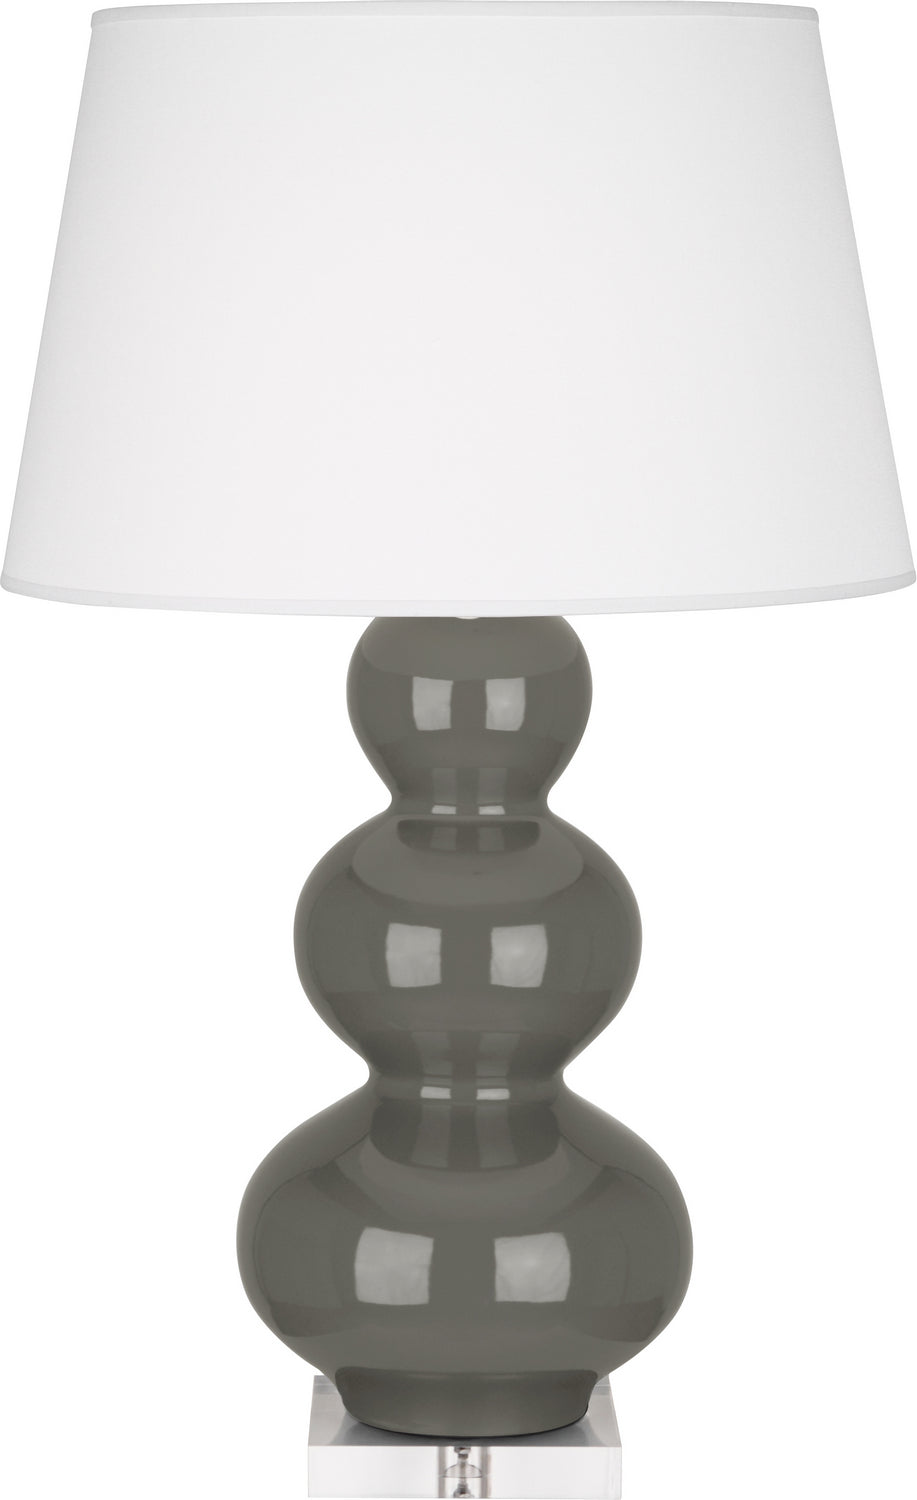 Robert Abbey - One Light Table Lamp - Triple Gourd - Ash Glazed Ceramic w/Lucite Base- Union Lighting Luminaires Decor